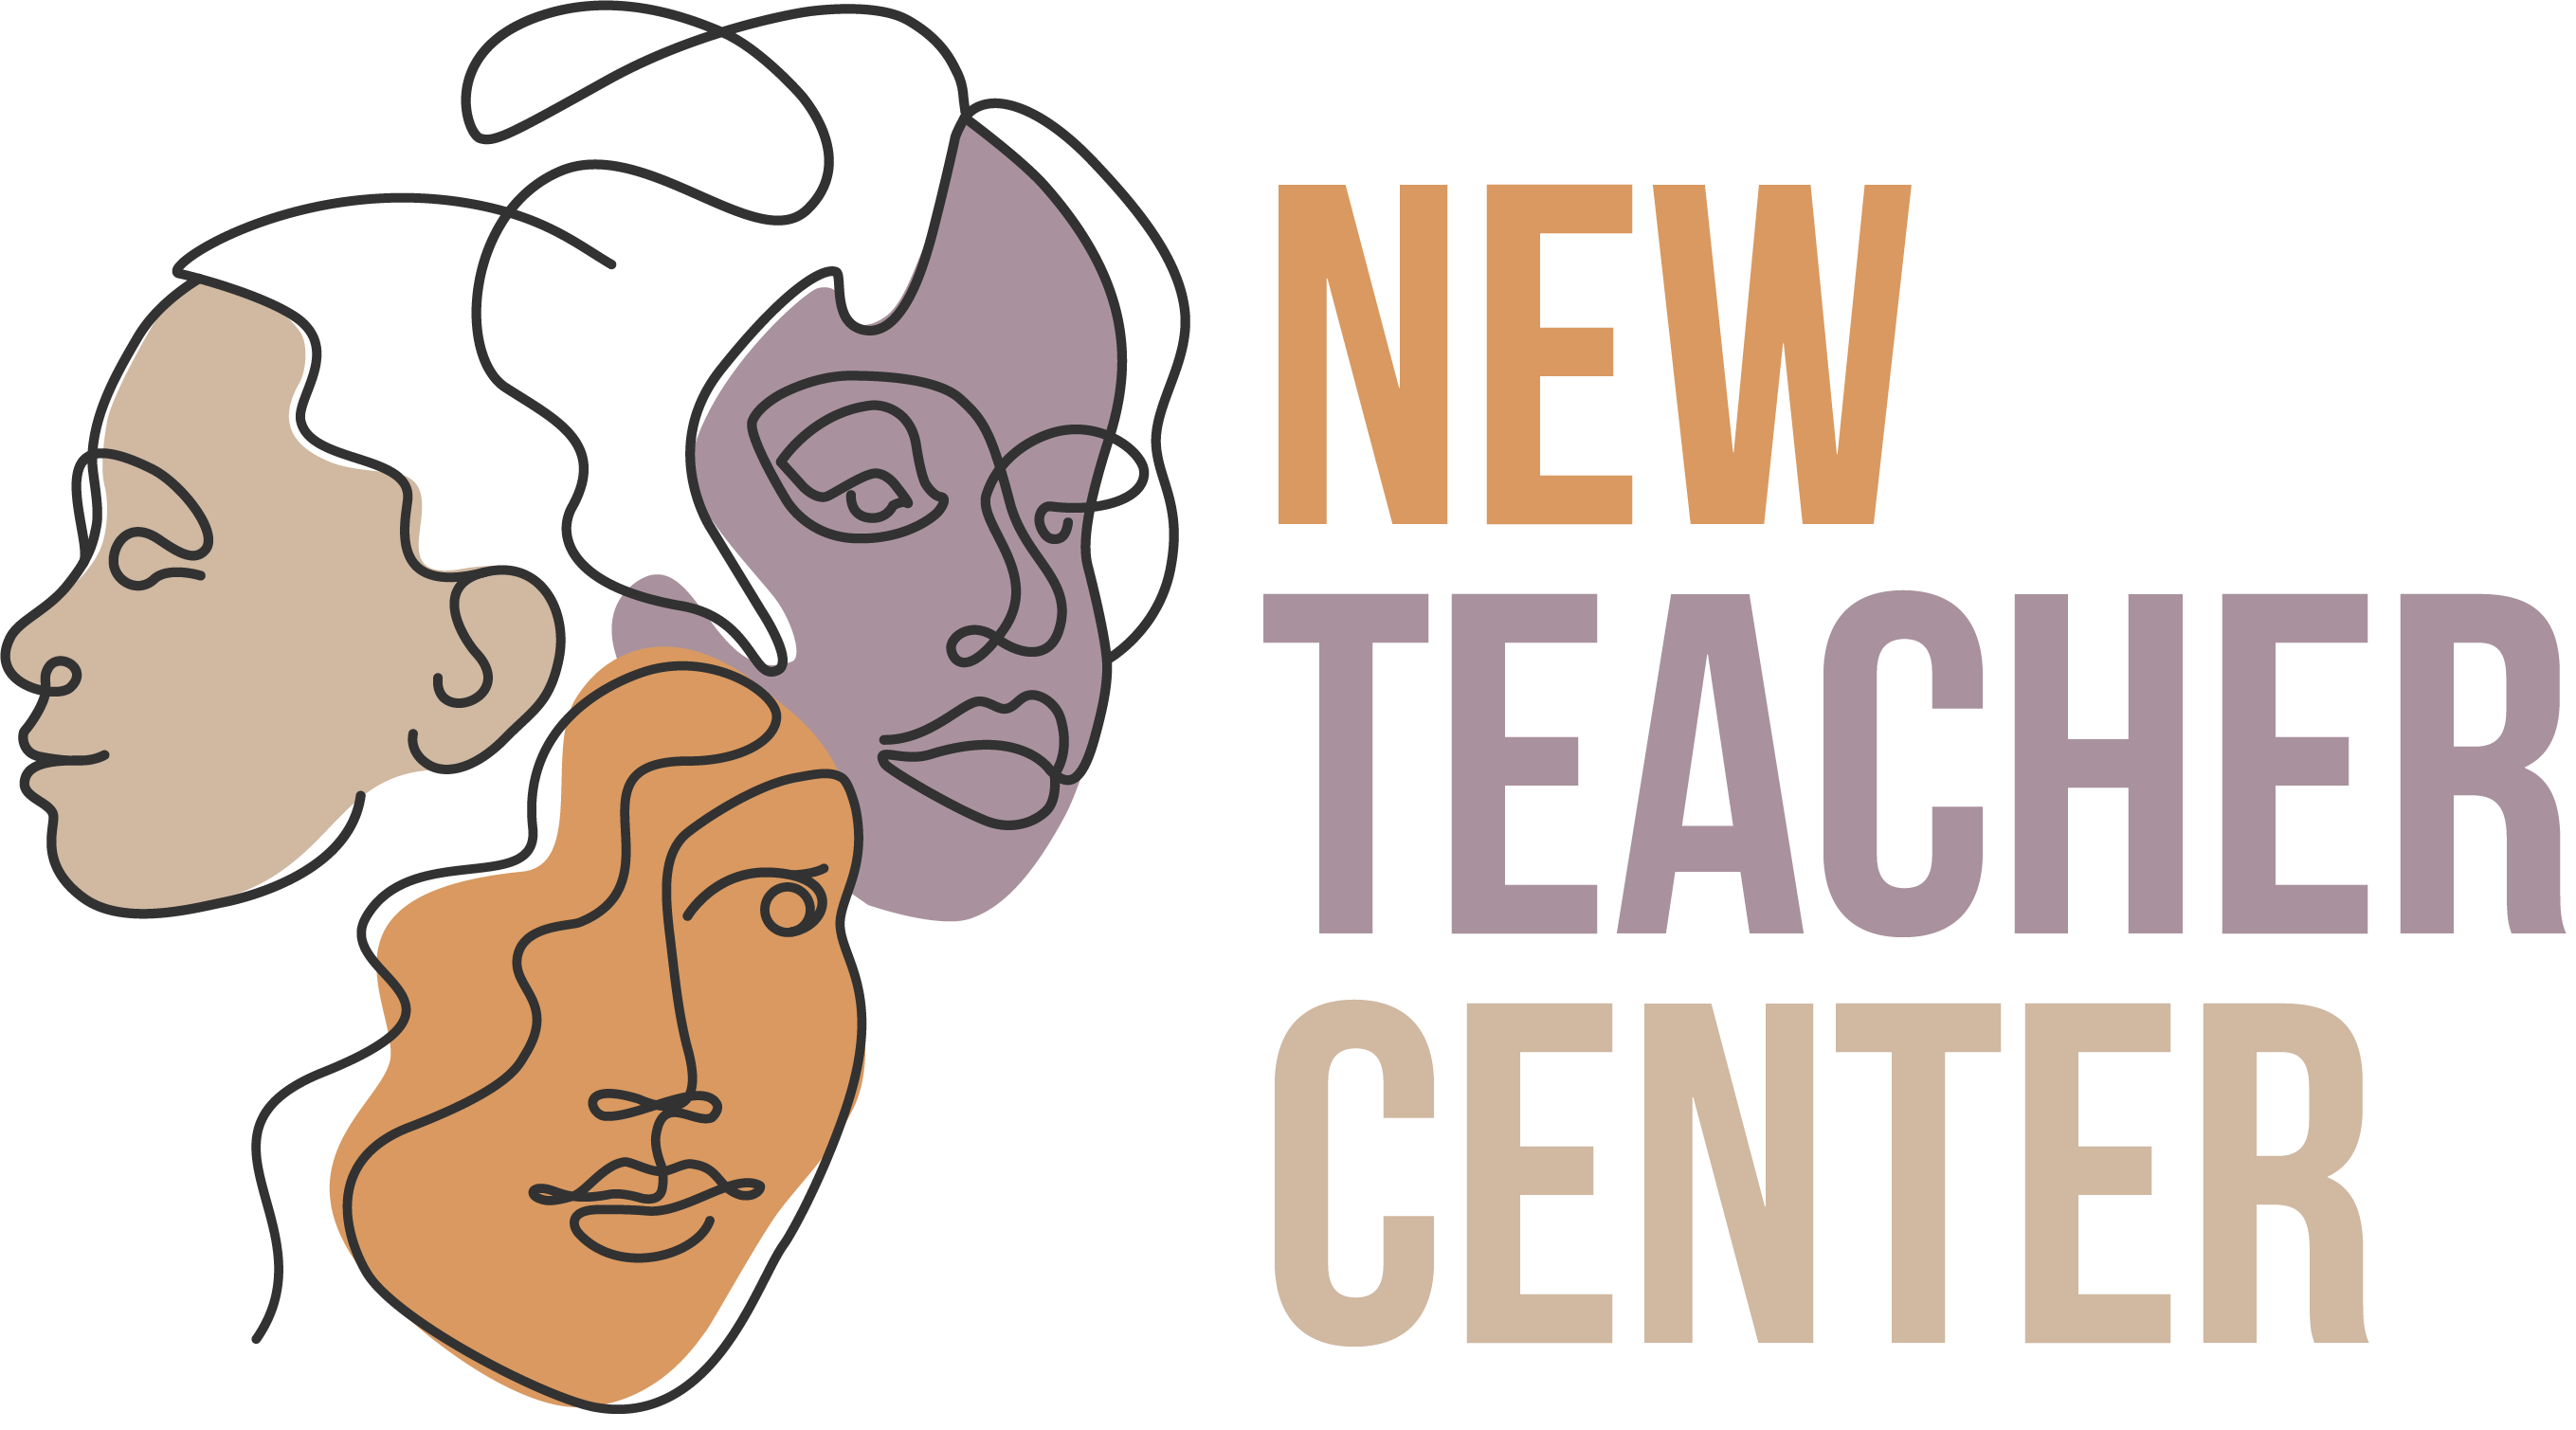 New Teacher Center N